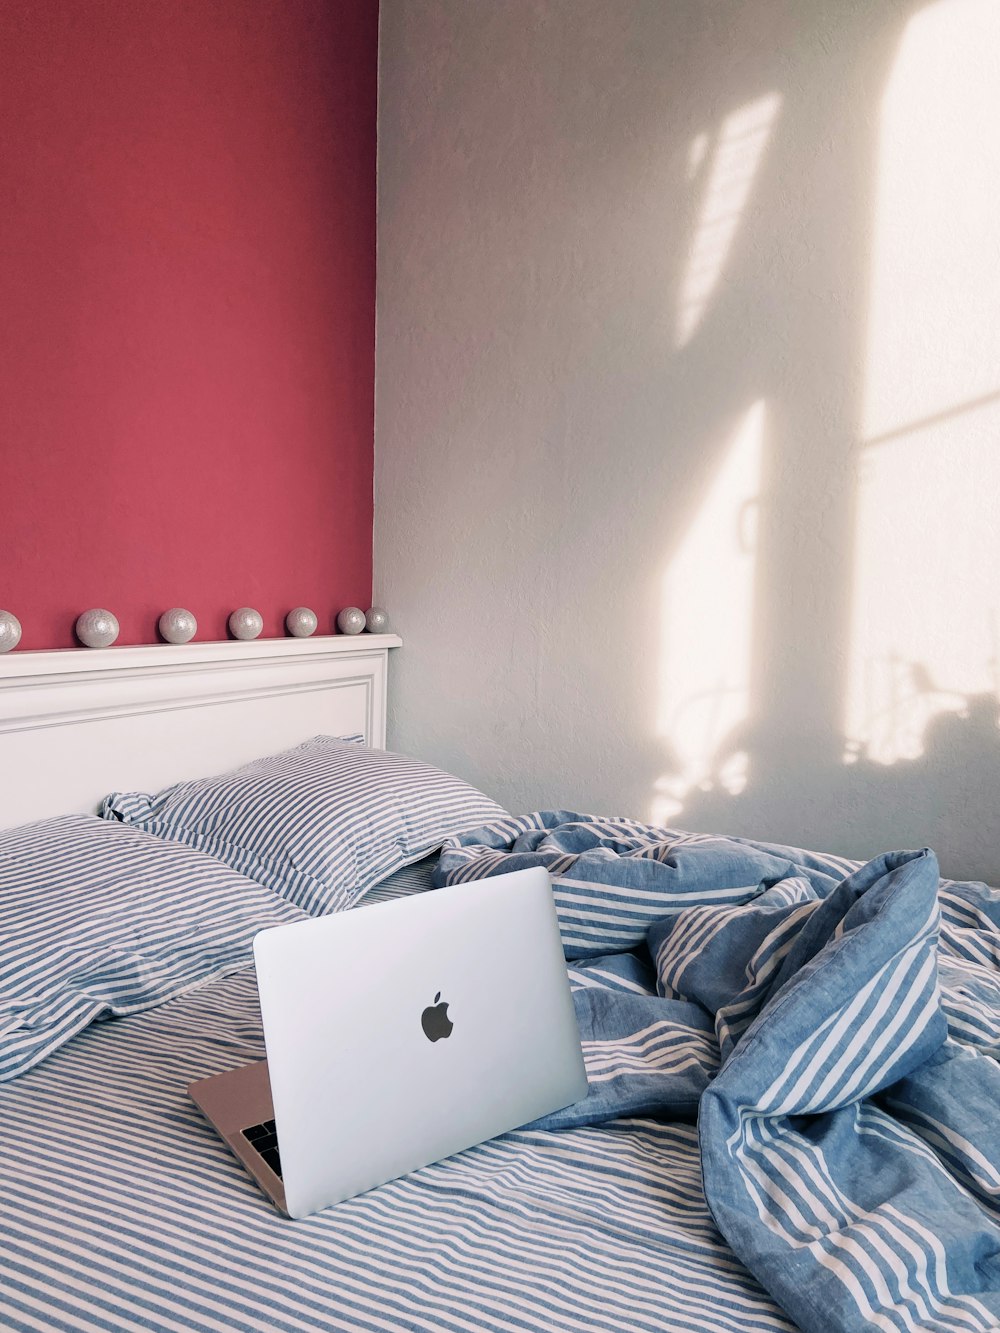 MacBook argenté sur linge de lit bleu et blanc